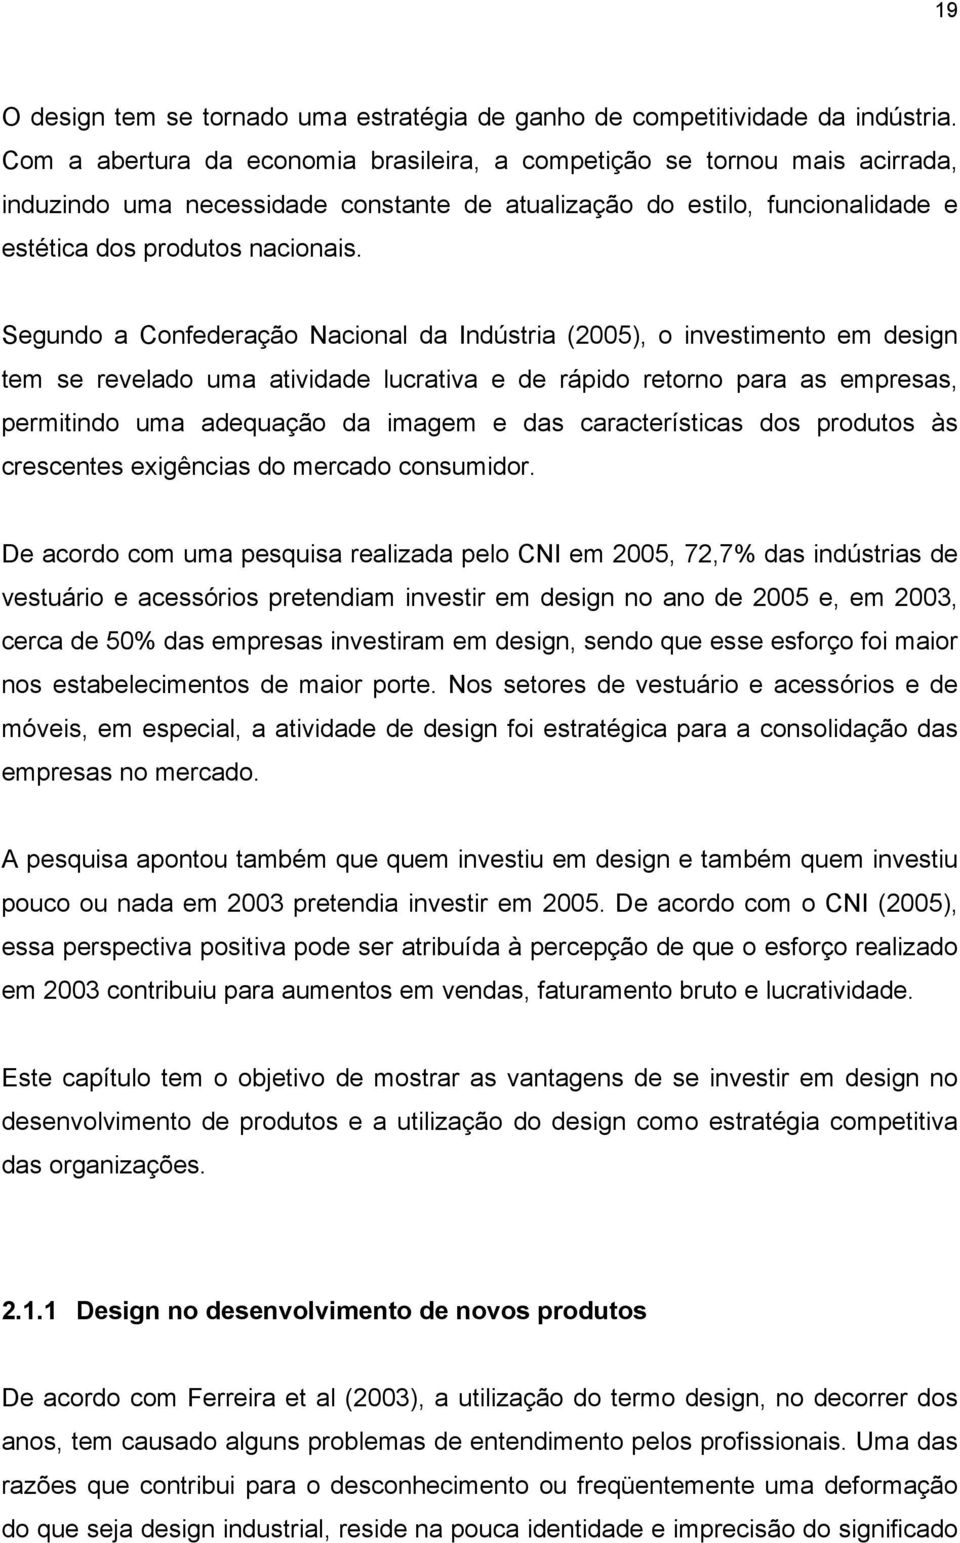 Segundo a Confederação Nacional da Indústria (2005), o investimento em design tem se revelado uma atividade lucrativa e de rápido retorno para as empresas, permitindo uma adequação da imagem e das